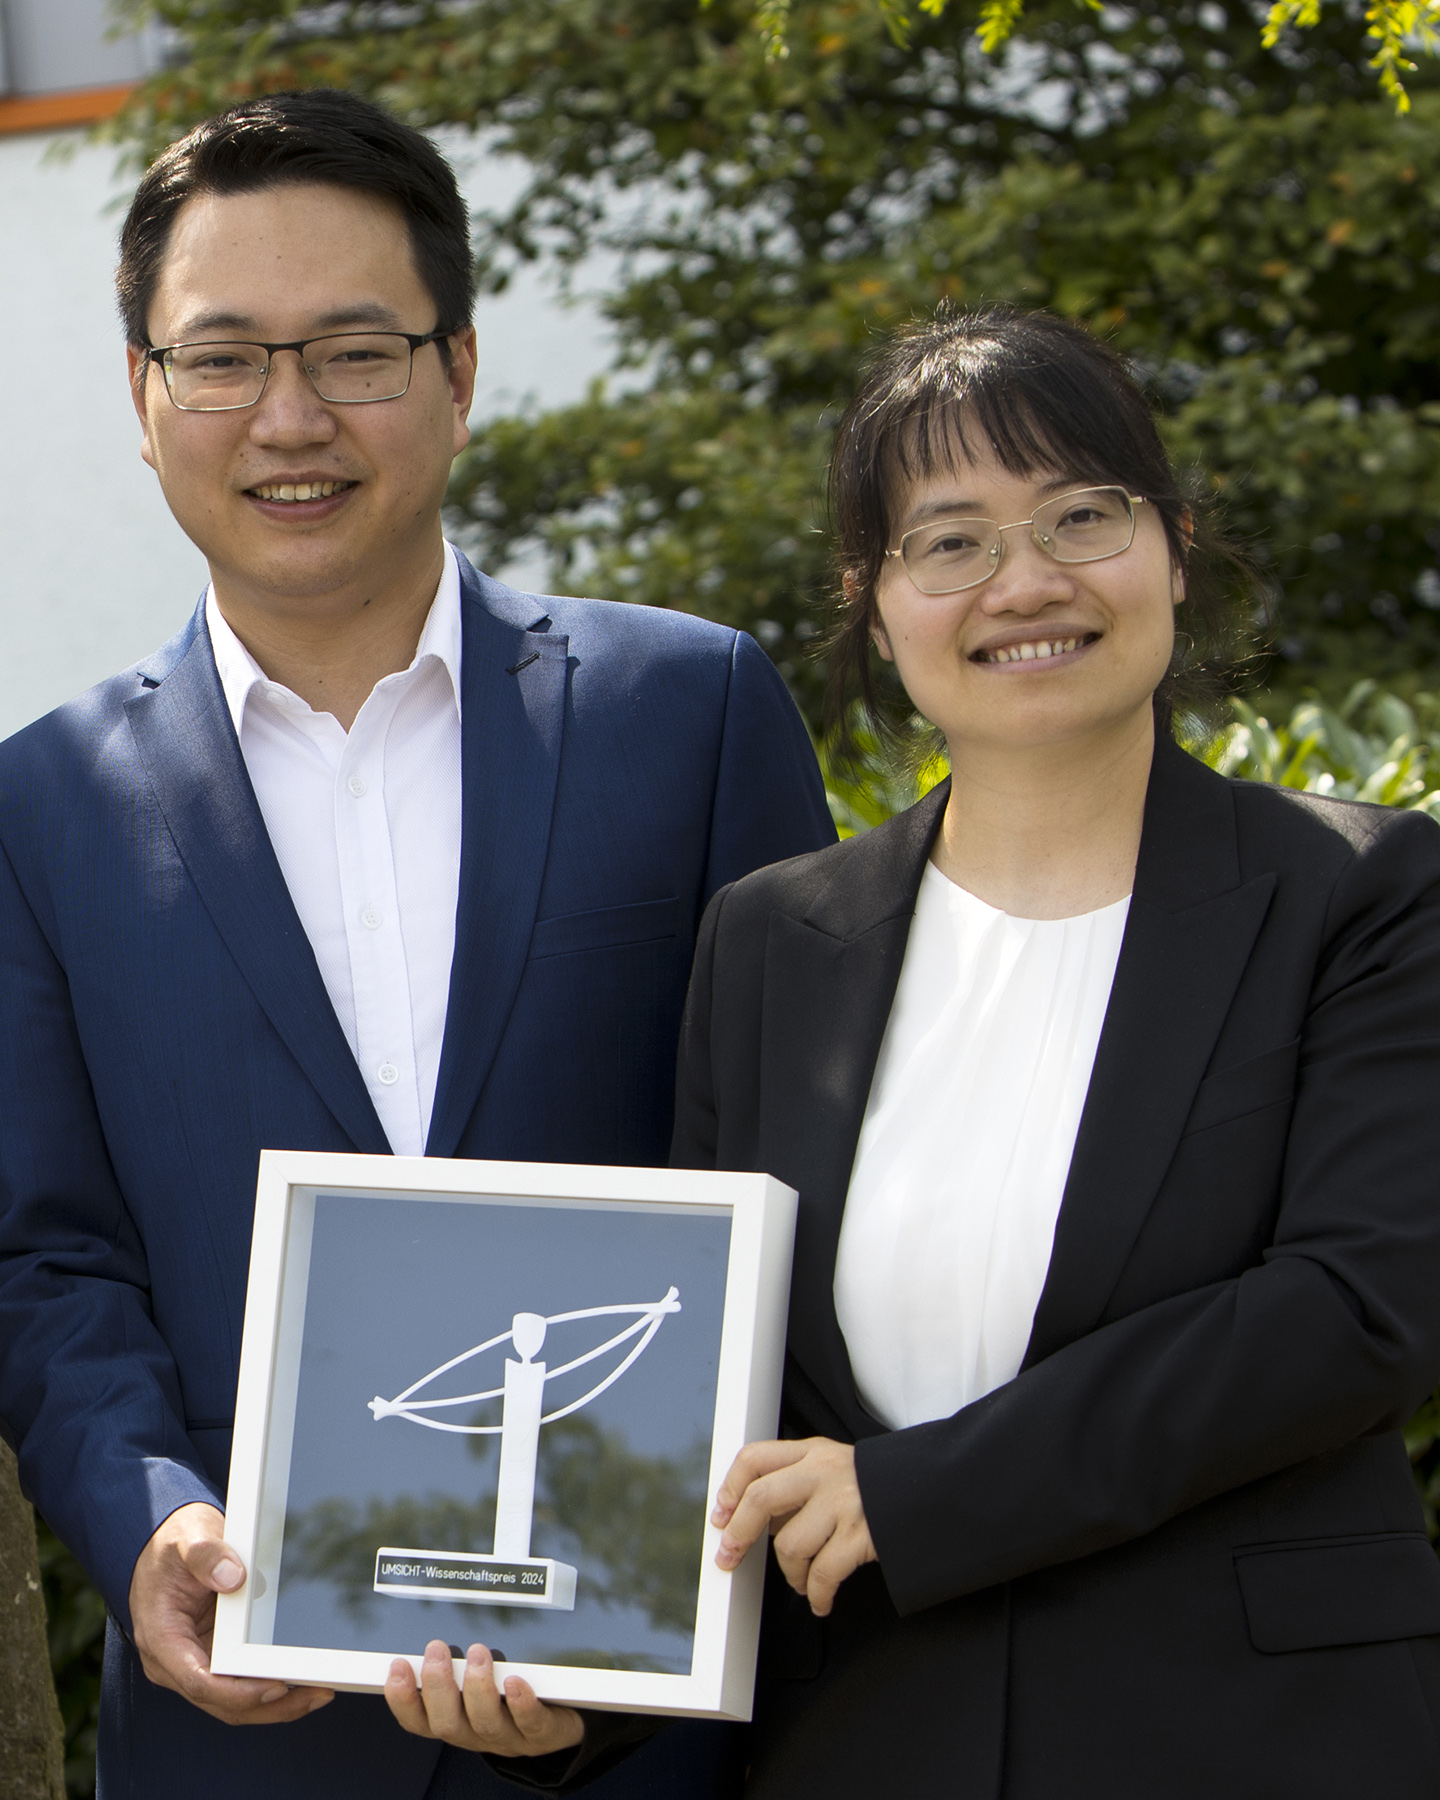 Gewinner-Team in der Kategorie Wissenschaft: Dr. Gan Huang und Dr. Jingyuan Xu